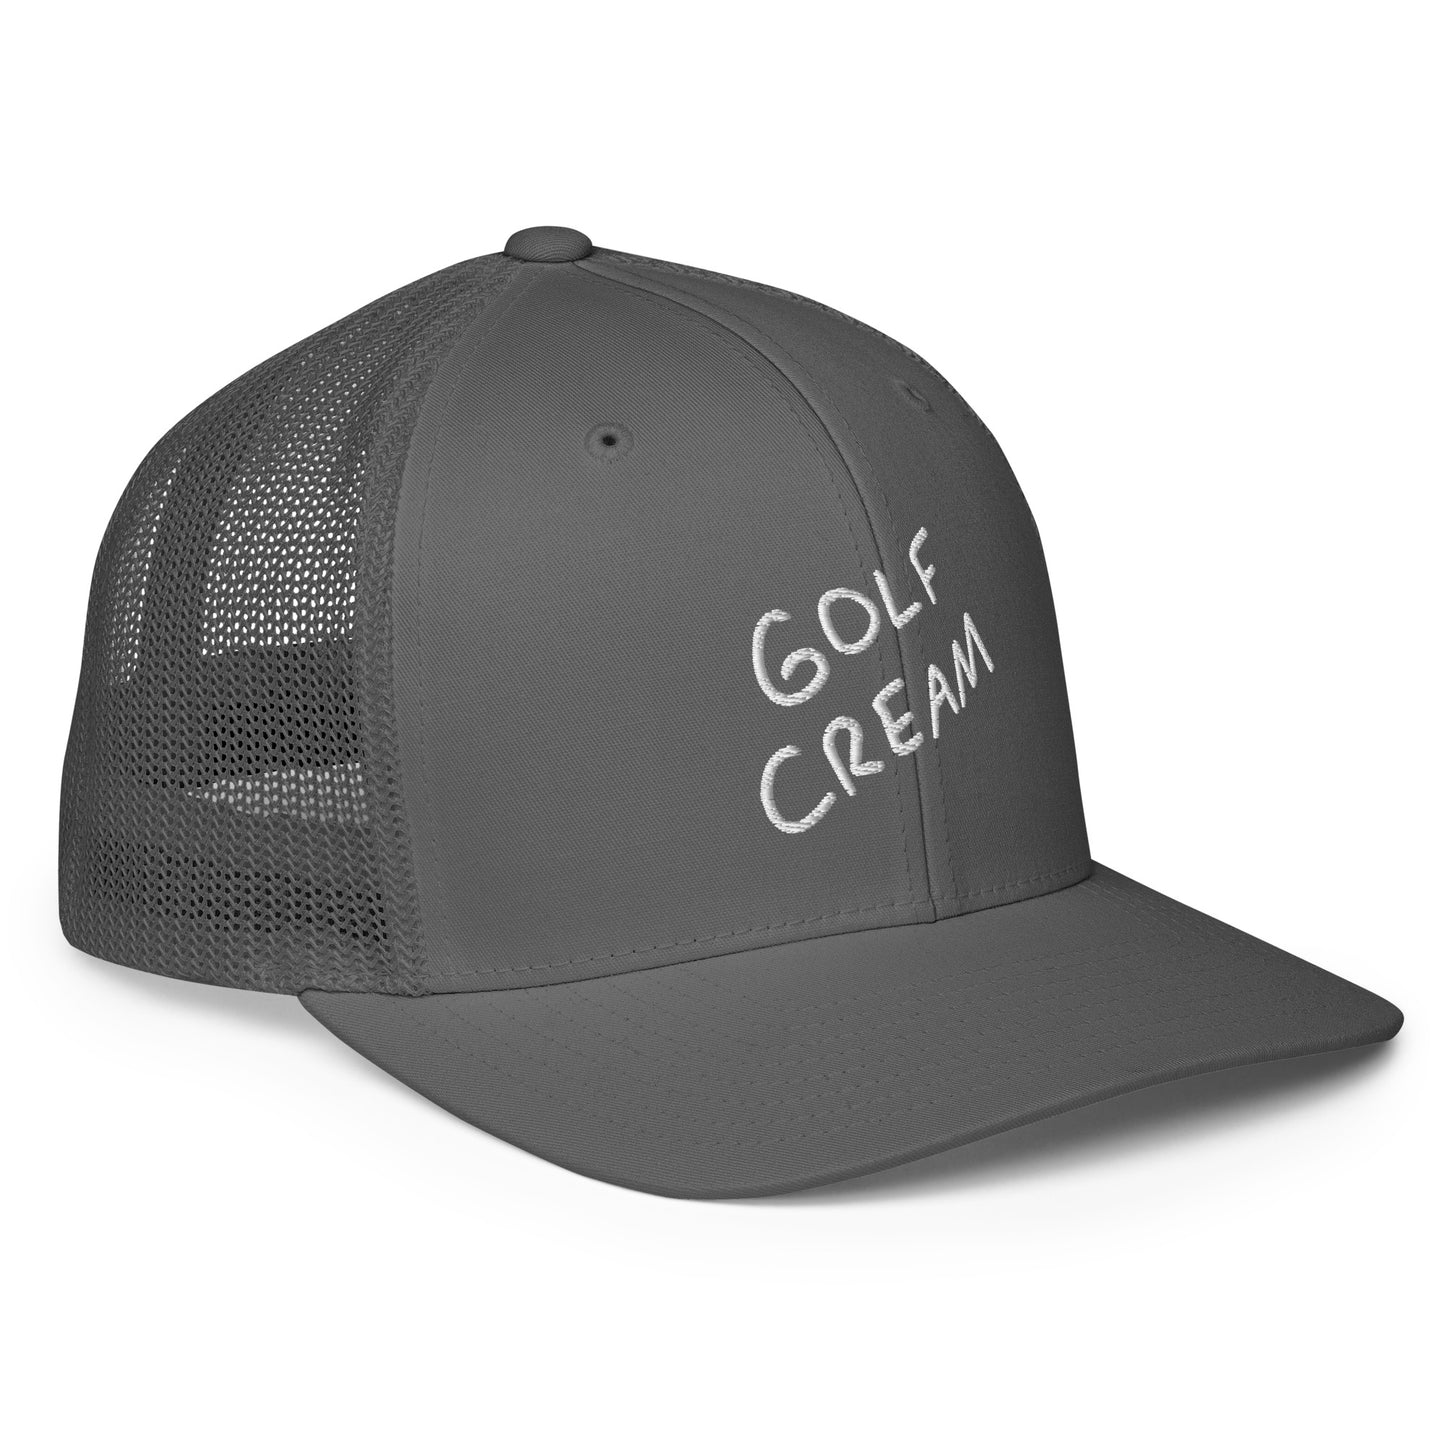 Closed-back trucker GOLF CREAM Signature cap